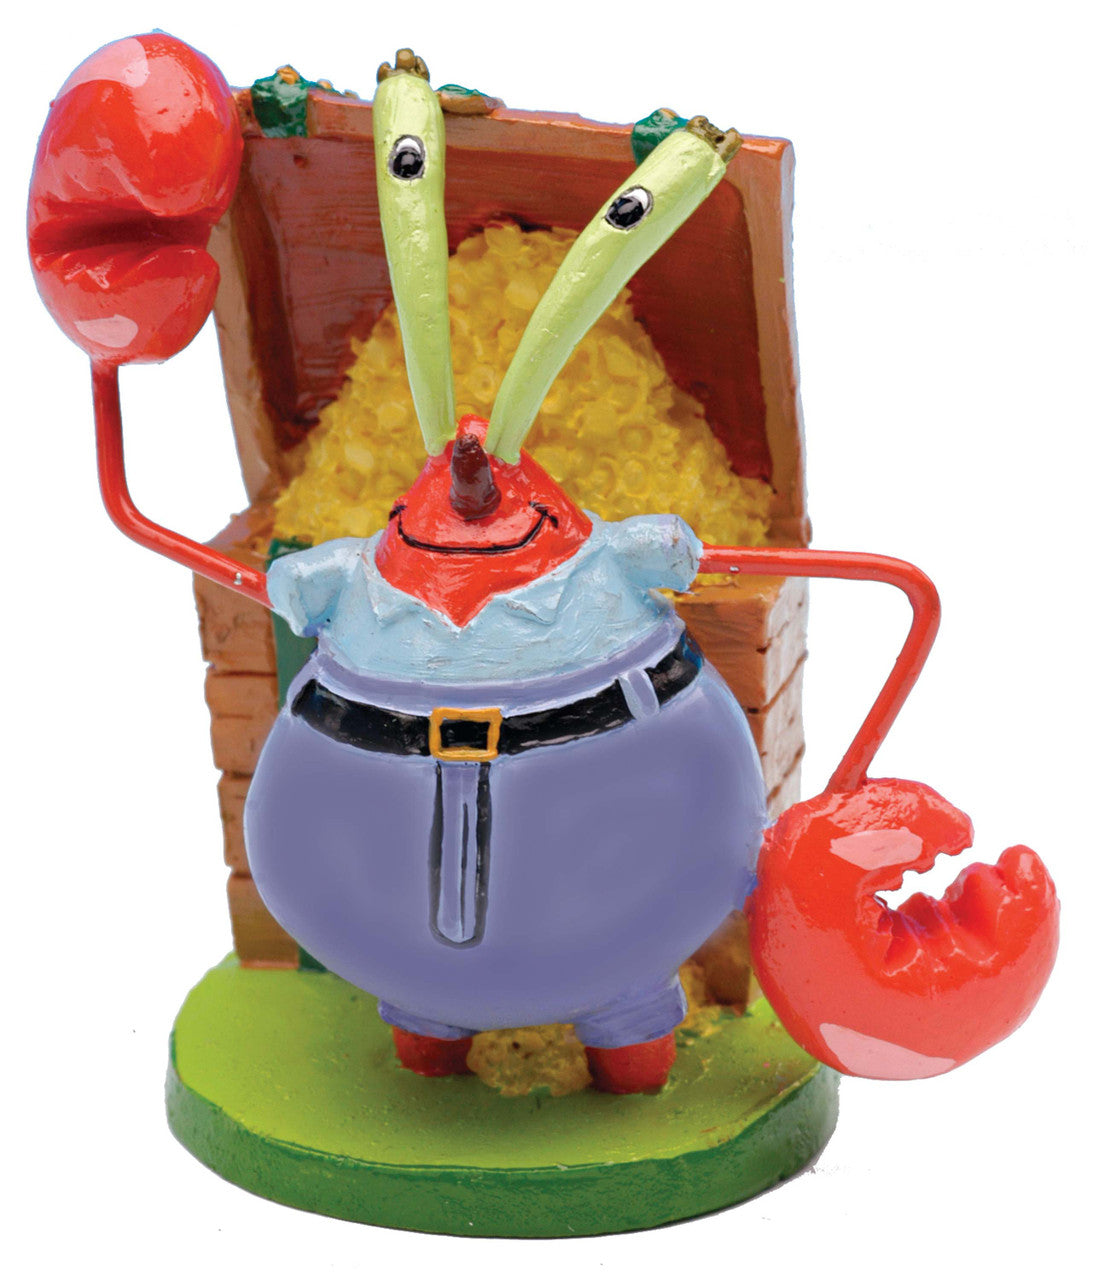 SpongeBob Mr. Krabs Aquarium Ornament Multi-Color 2 in Mini